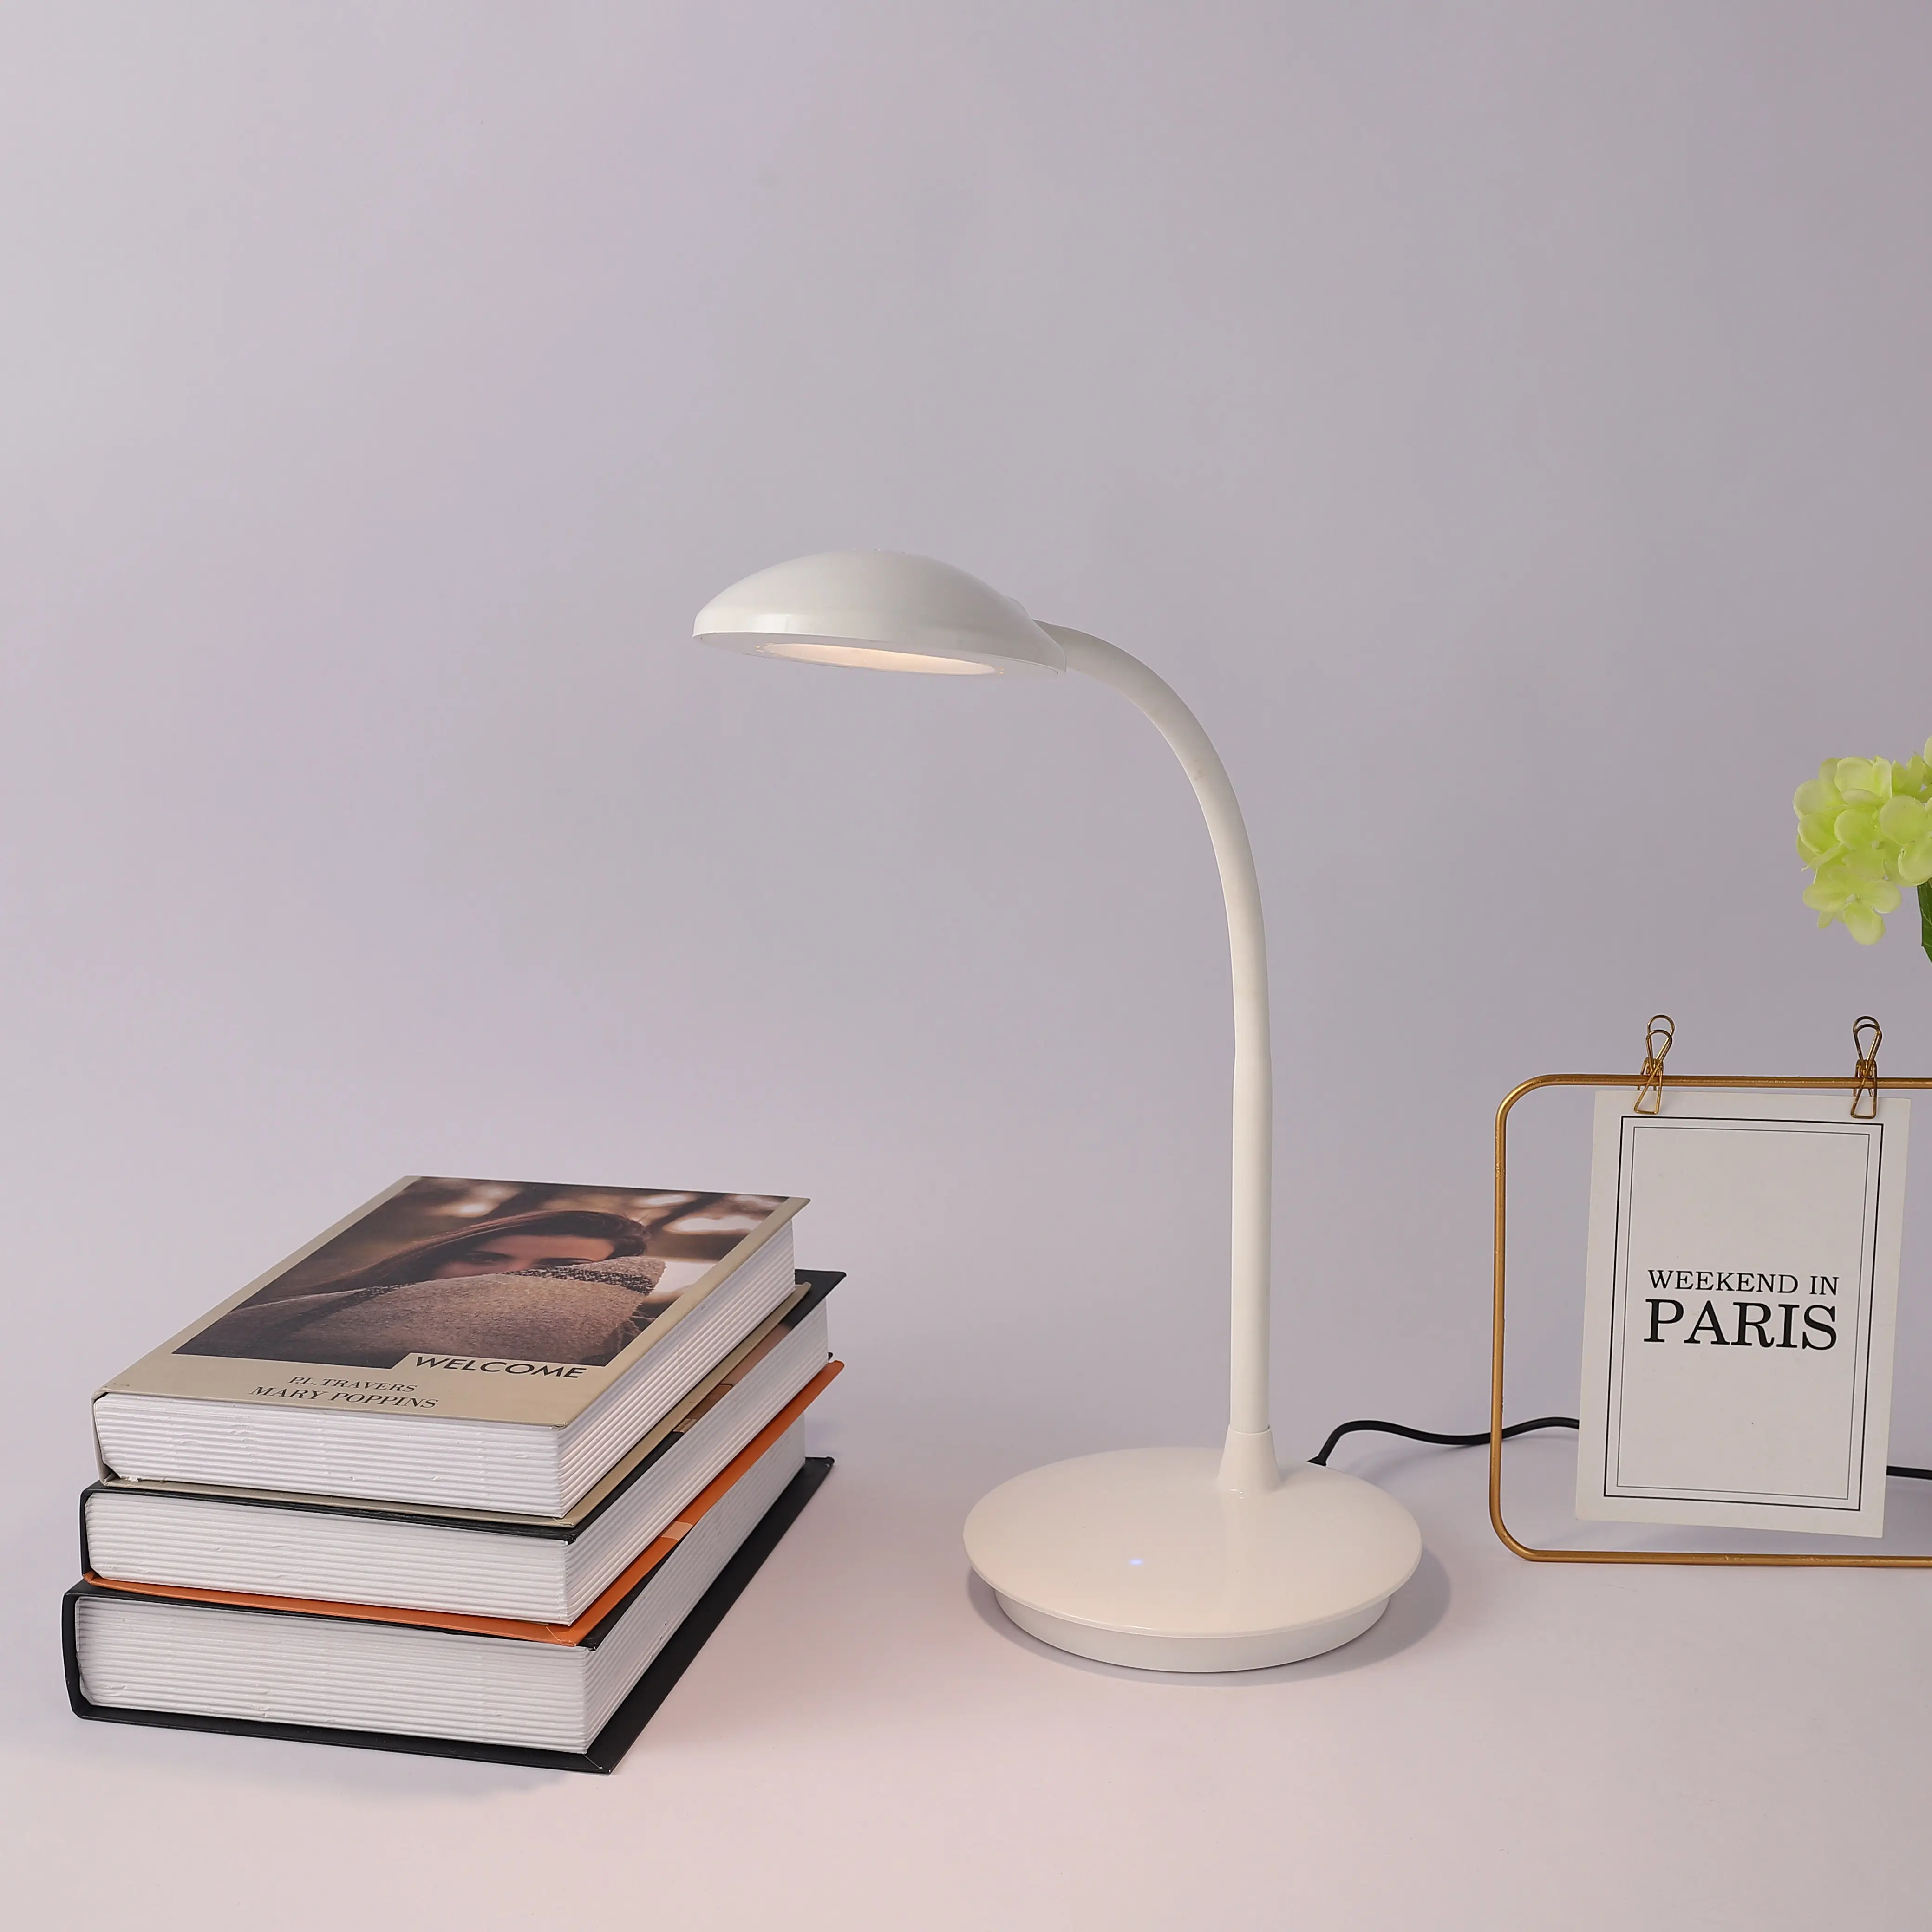 Hot Sales Amazon einziehbare LED-Lesung Aluminium Tisch lampe Dimmbare Lese lampen LED Weiße Tisch lampe für Hotel/Schlafzimmer/Studie